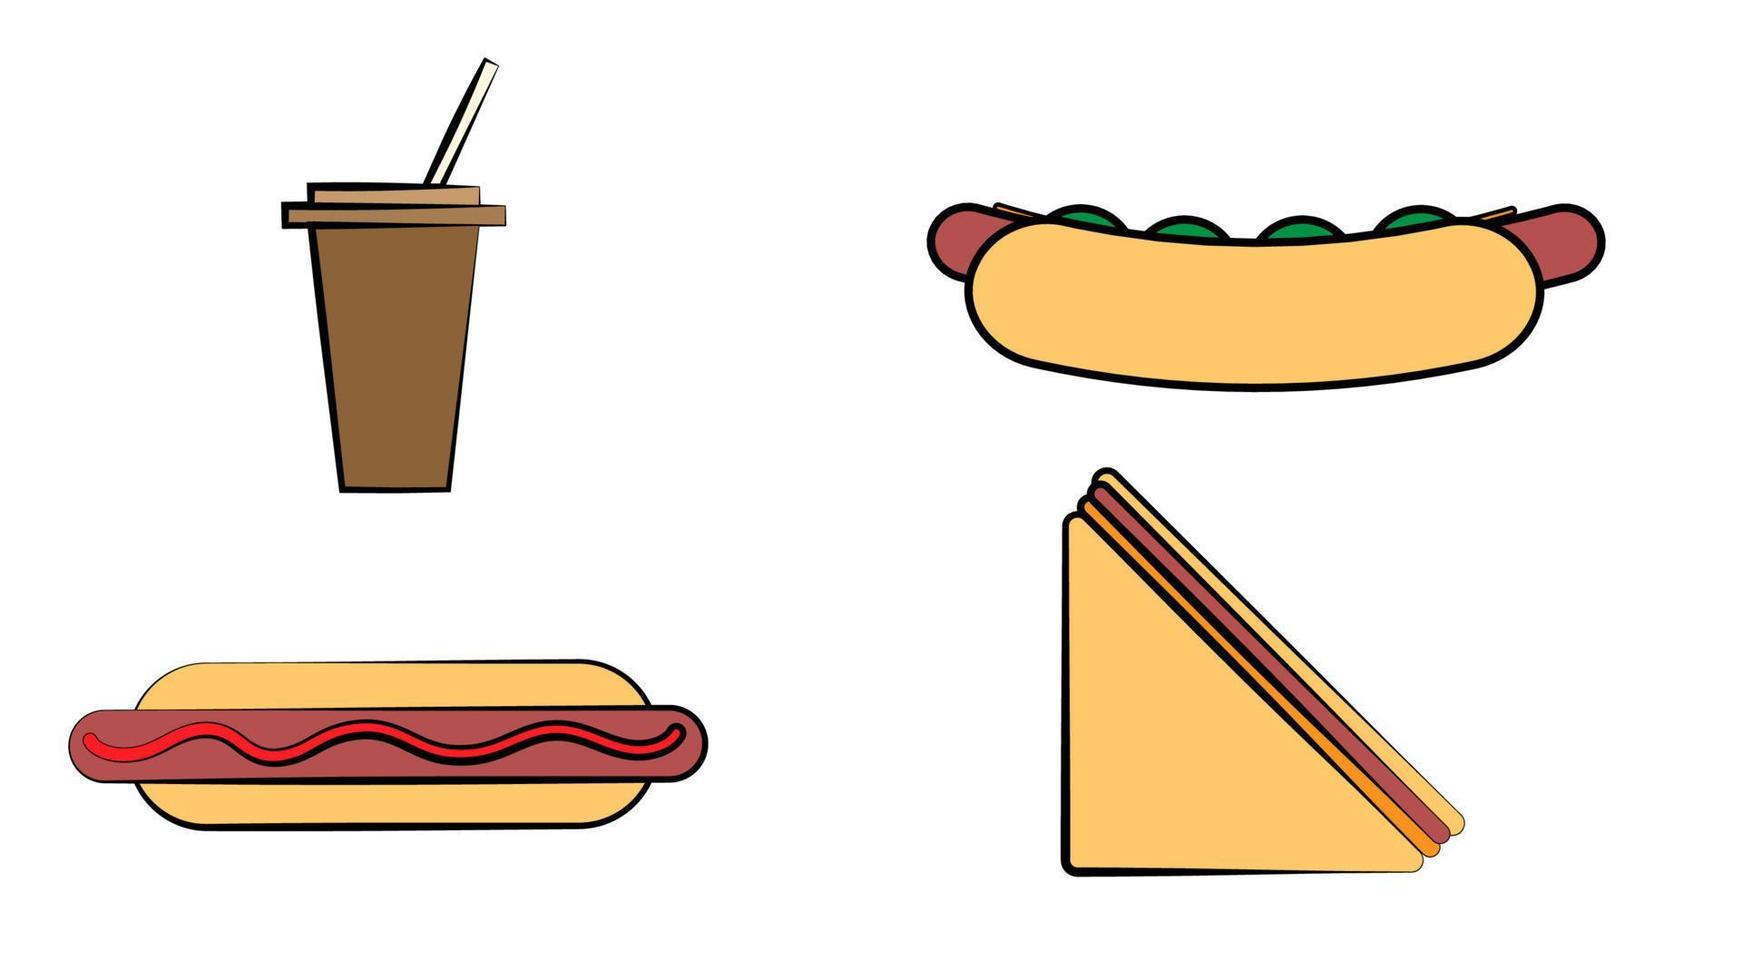 platos de comida rápida, juego de bebidas y postres, croissant, helado, hamburguesa, sándwich, bebida gaseosa, ilustración vectorial de perros calientes vector